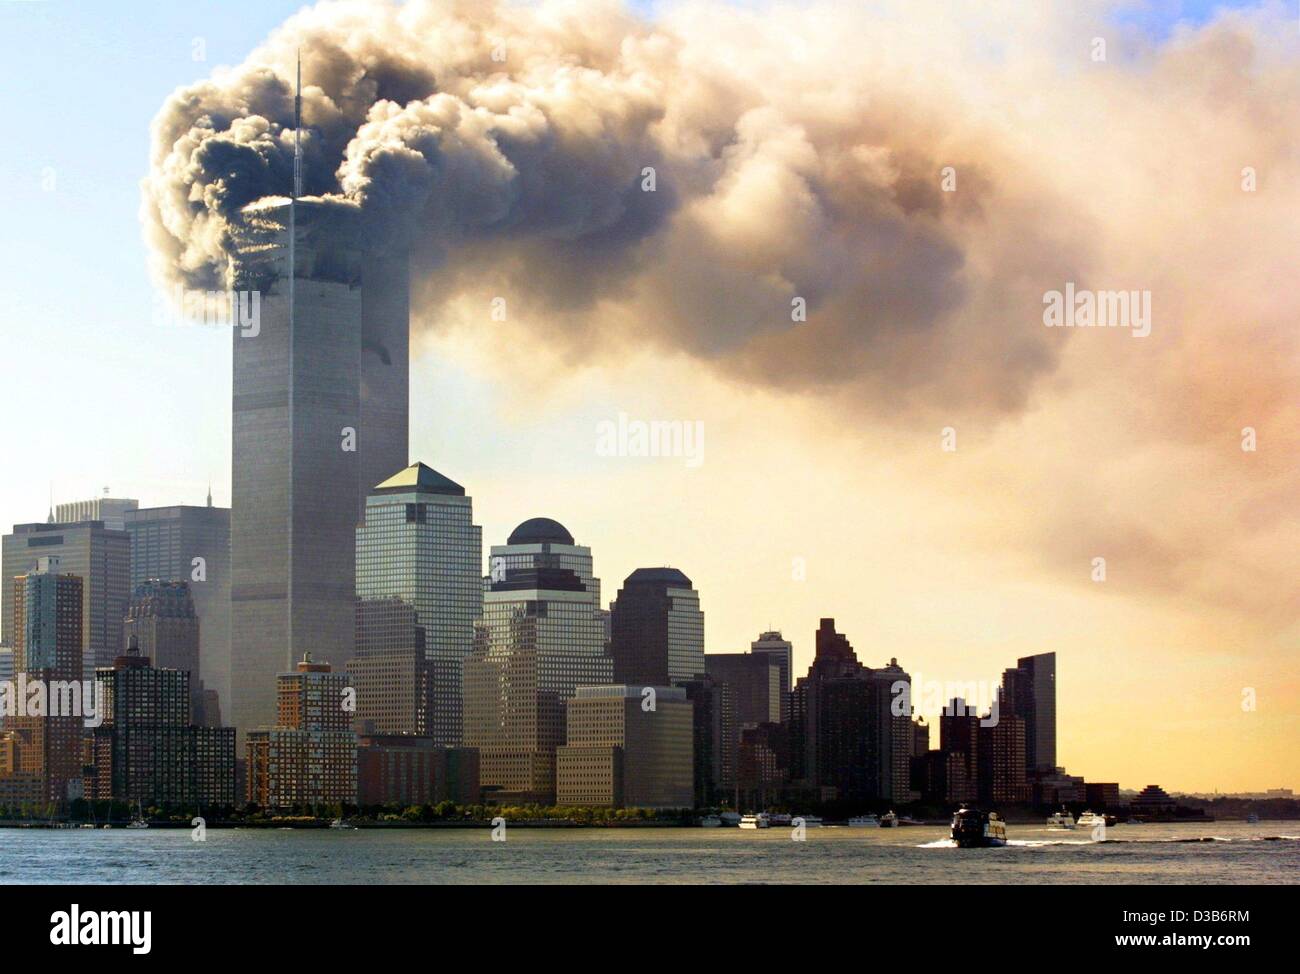 (Dpa) - nuvole di fumo salire dalla combustione piani superiori appena prima le torri gemelle del World Trade Center a New York il collasso, 11 settembre 2001. 2,823 persone sono state uccise quando i terroristi islamici schiantato il WTC con piani highjacked. Insieme con 189 morti nell'attacco al Pentagono di PLA Foto Stock